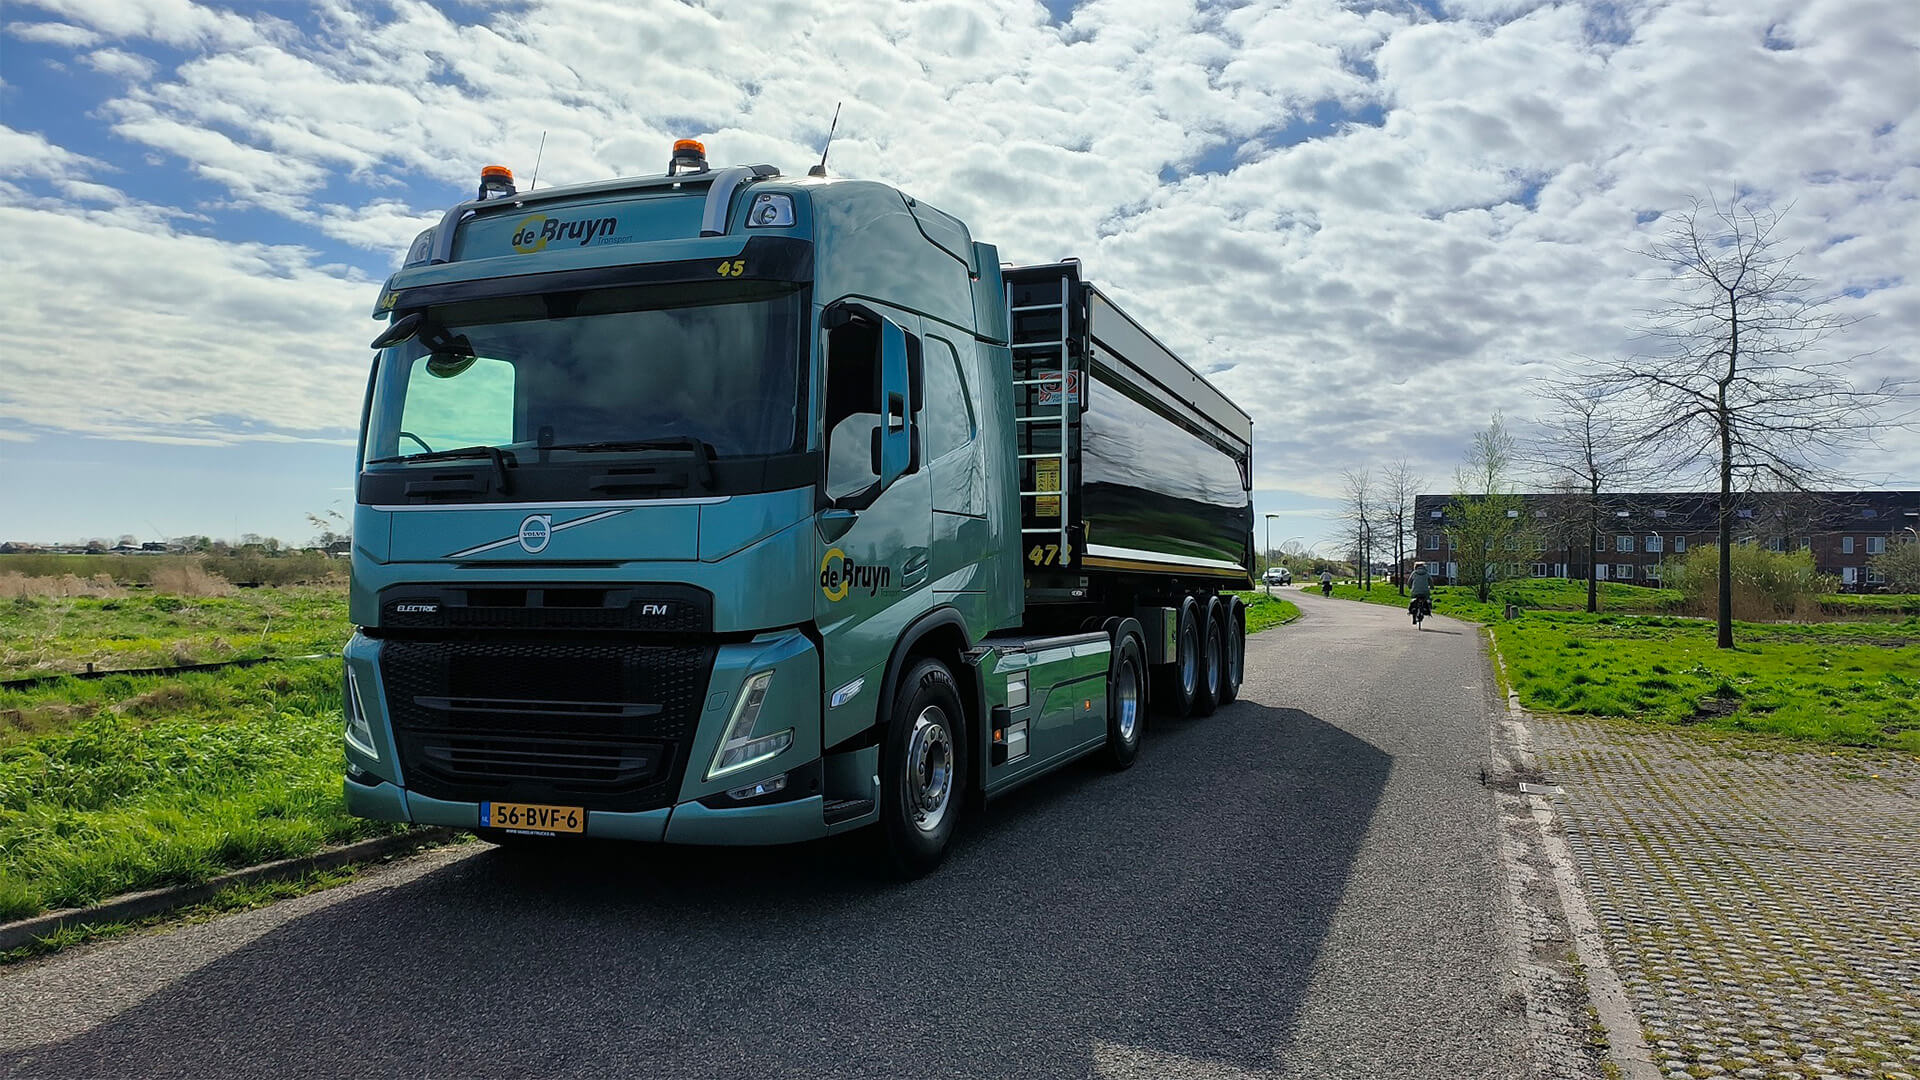 zero emissie - elektrisch transport - Volvo FME truck - de Bruyn Transport